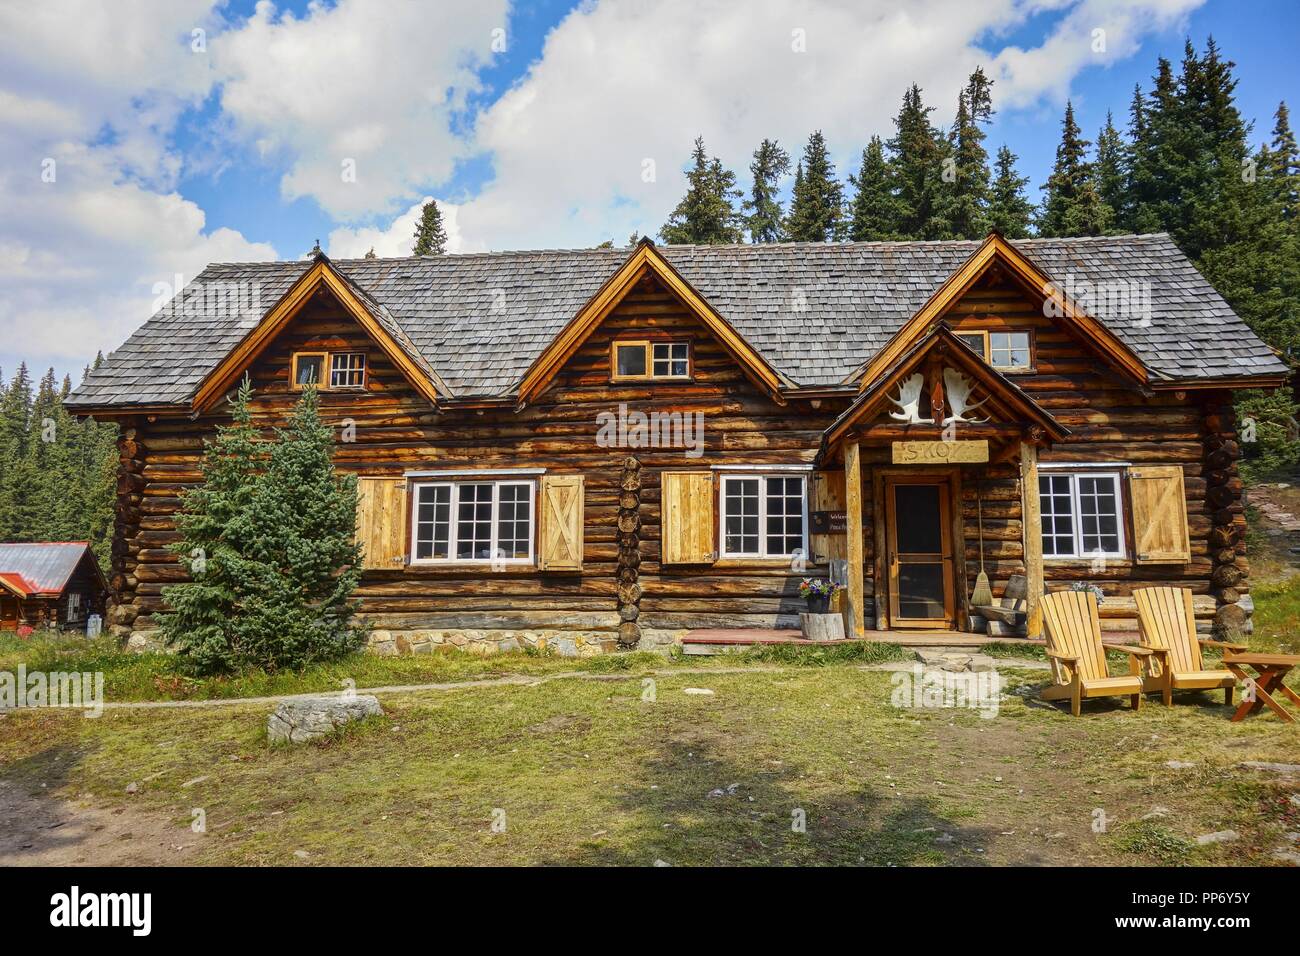 Skoki ski Lodge Log Cabin façade extérieur du bâtiment. Lieu historique national du Canada vue de face, Parc national Banff Rocky Mountains Wilderness Banque D'Images